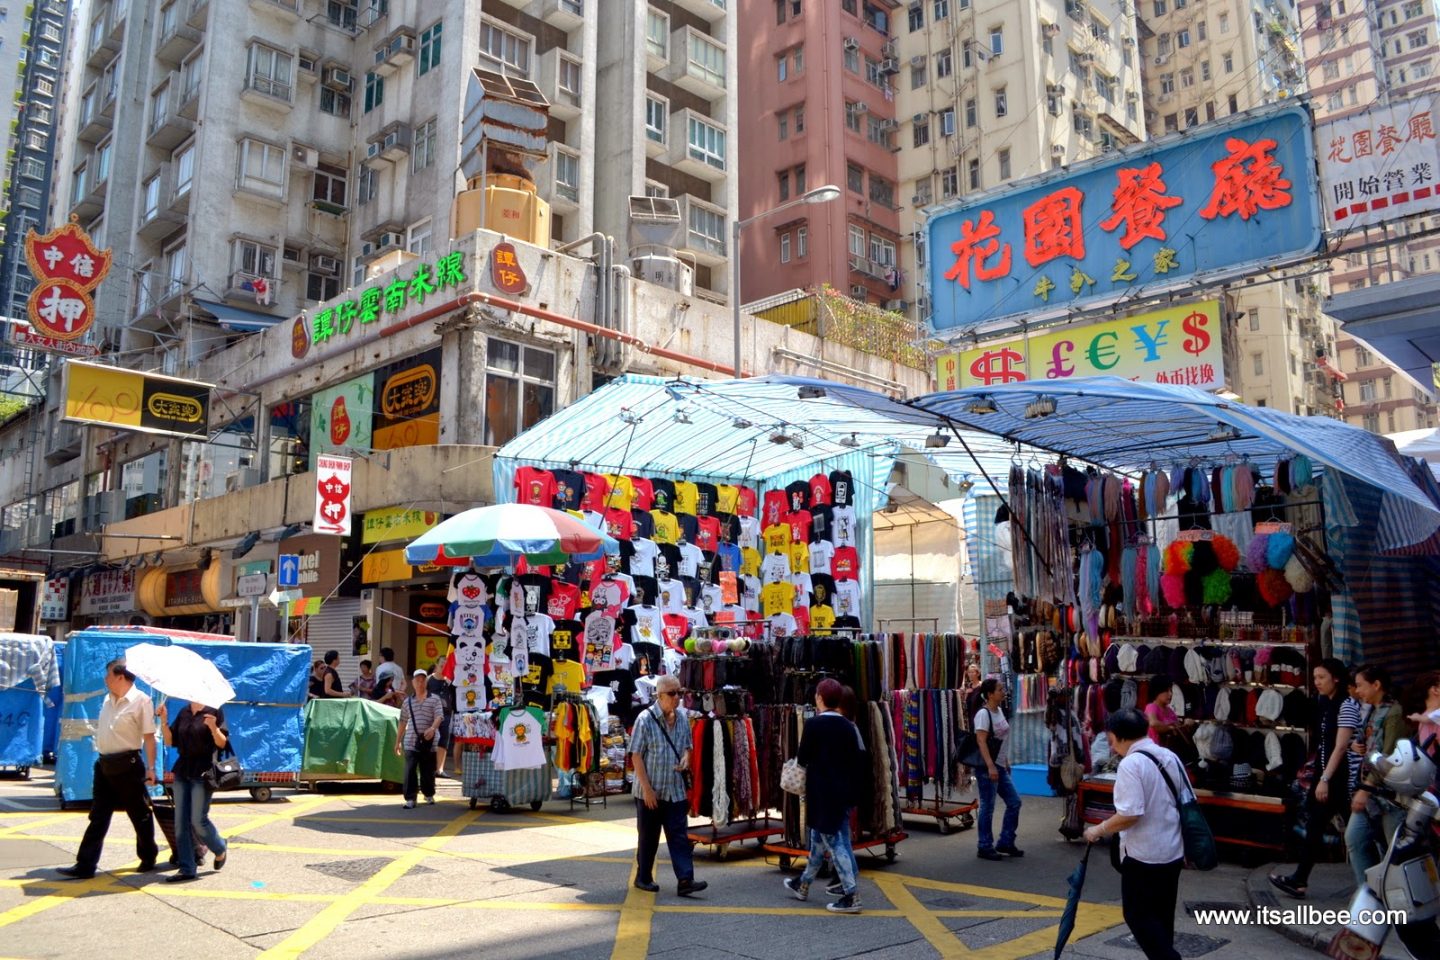 Hong Kong And Macau Itinerary In 4 Days